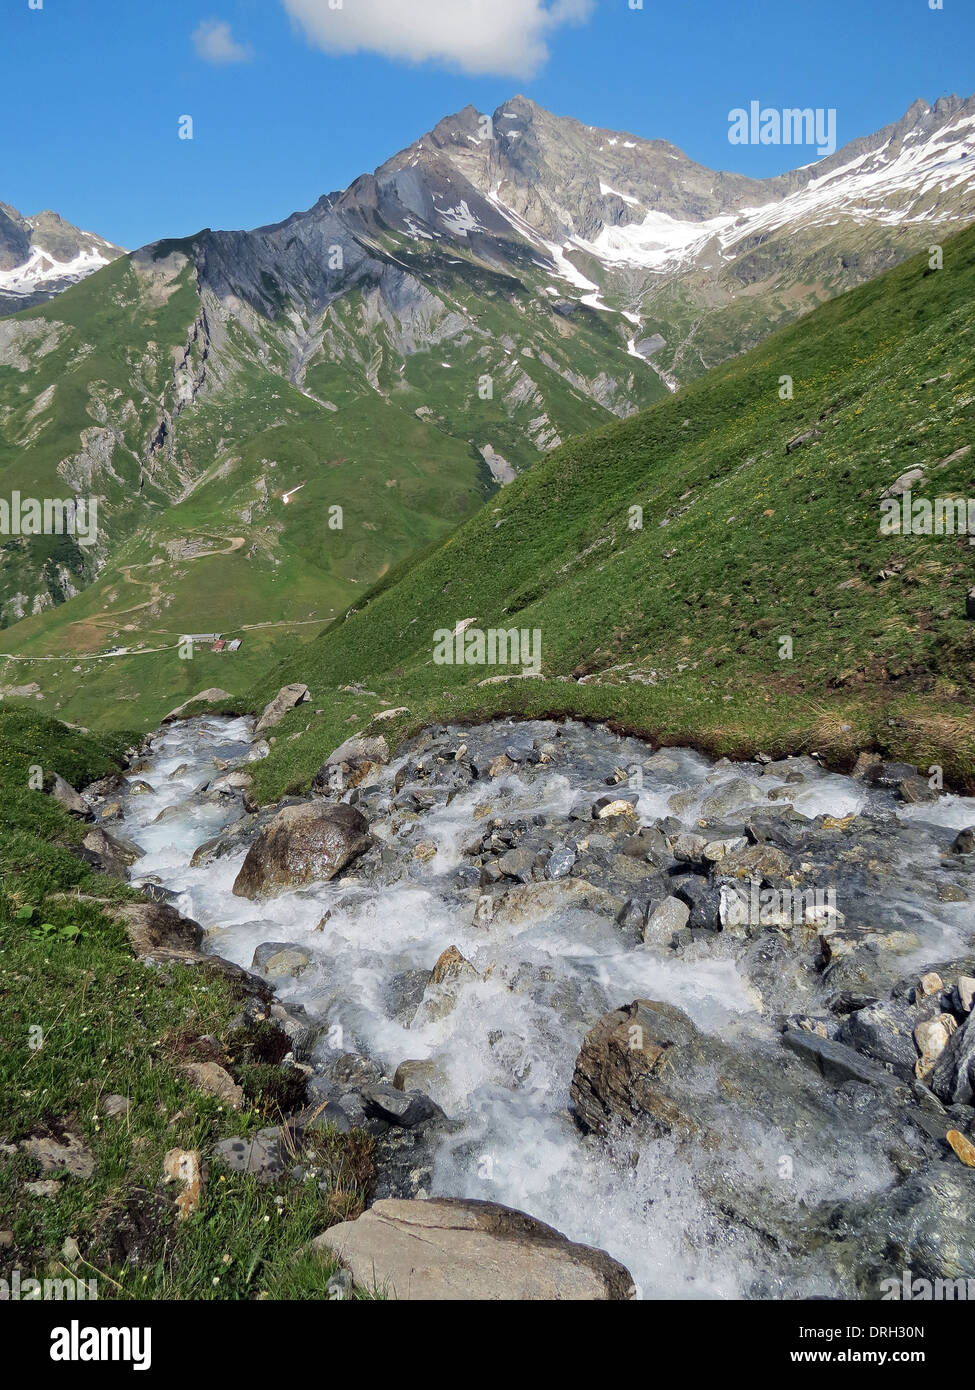 Torrent alpin dans la Vallée des Glaciers. Alpes françaises. Europe. Banque D'Images